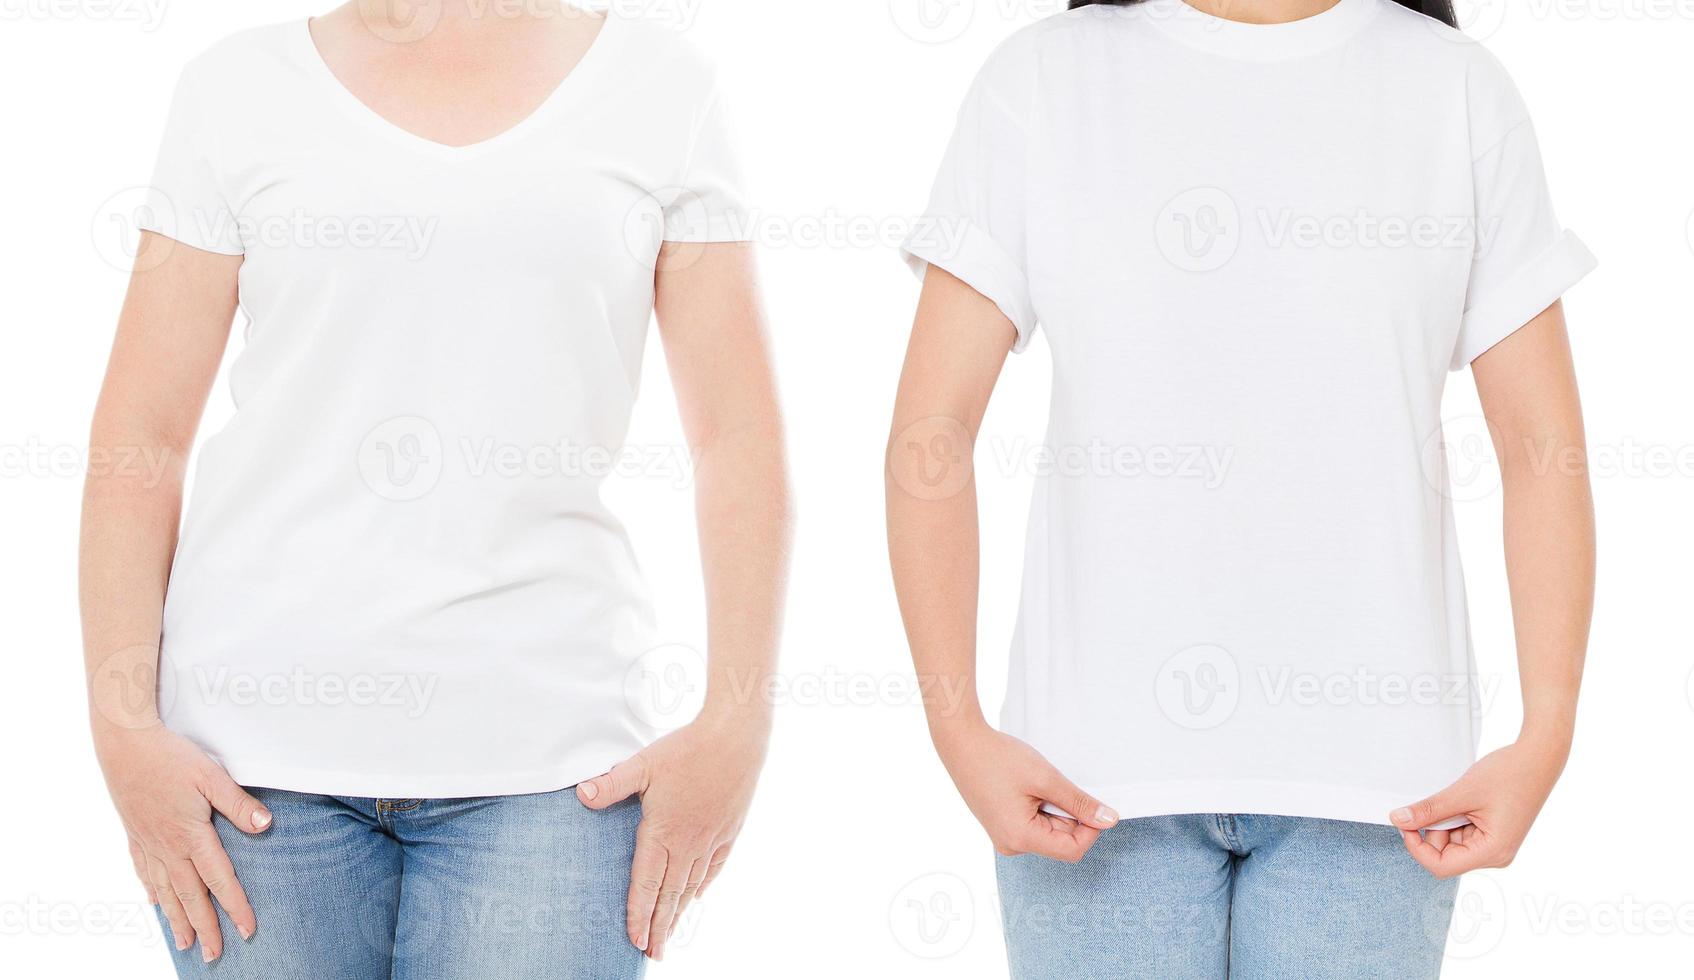 maquete de camiseta branca de mulher, conjunto de camiseta em branco vazio, menina no espaço de cópia de camiseta em branco, camiseta branca isolada em colagem de fundo branco ou conjunto foto